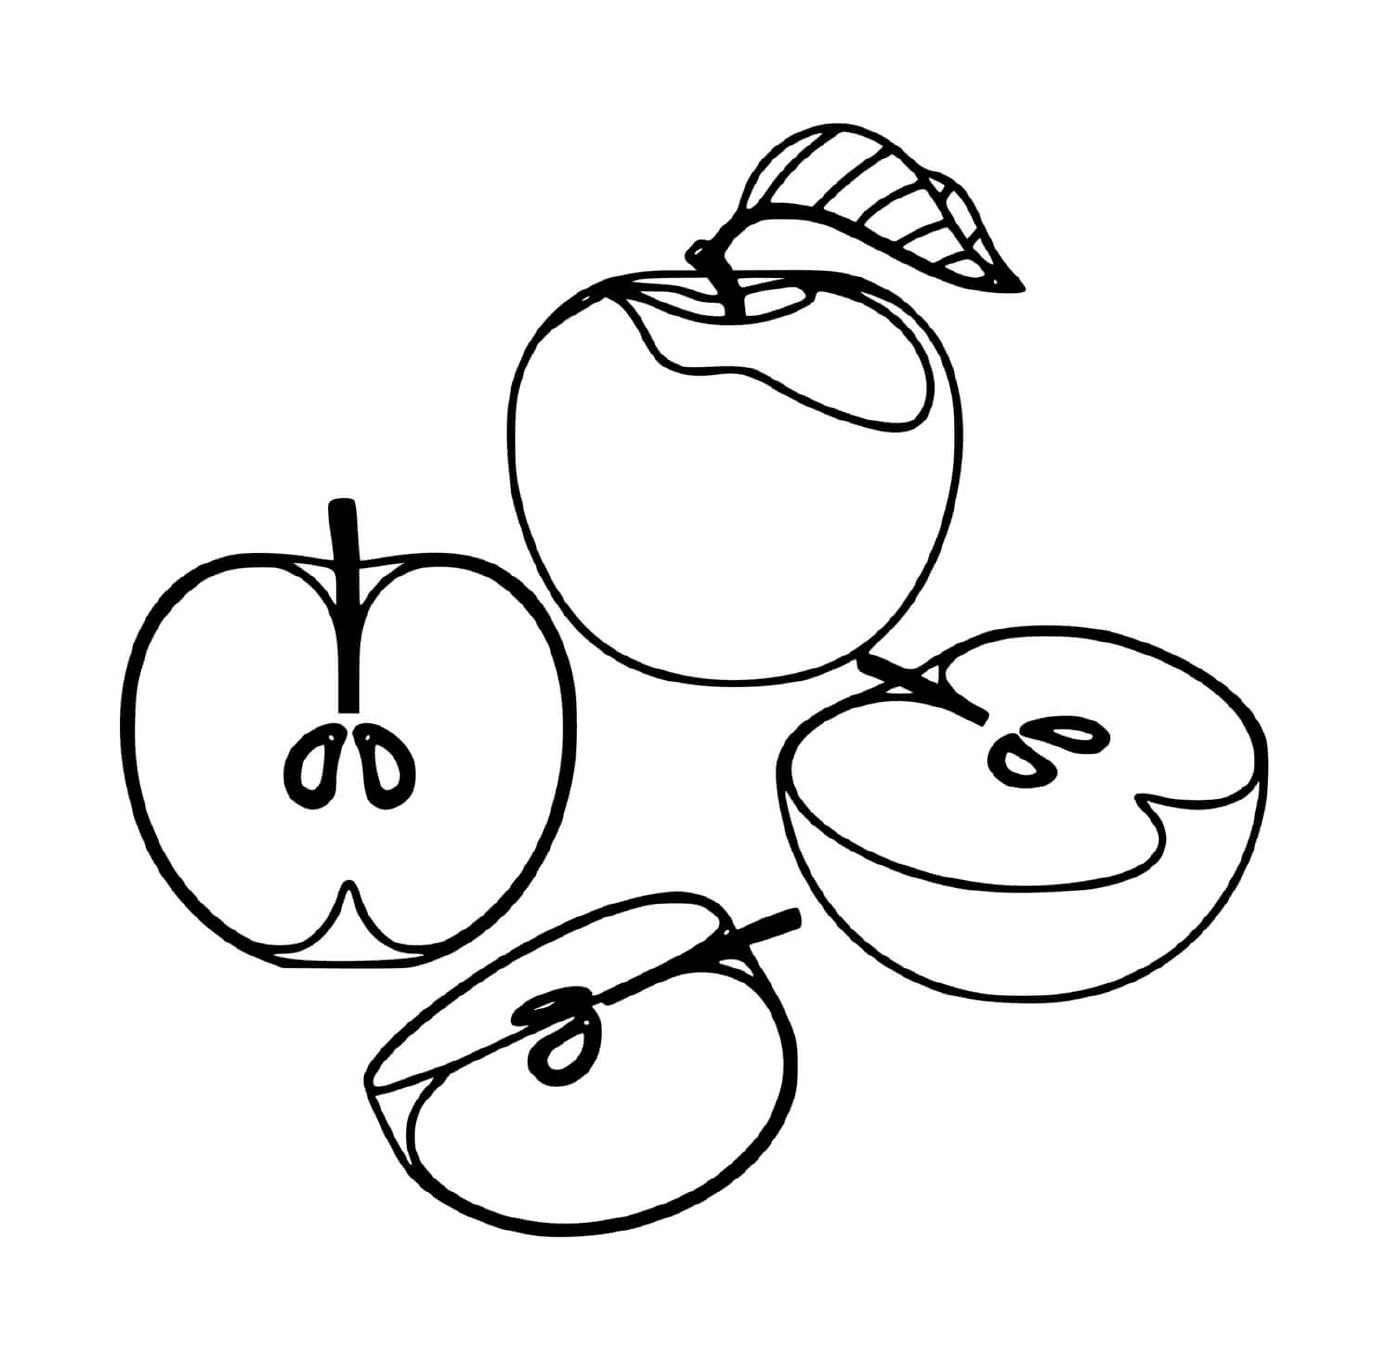  Manzanas deliciosas y jugosas 